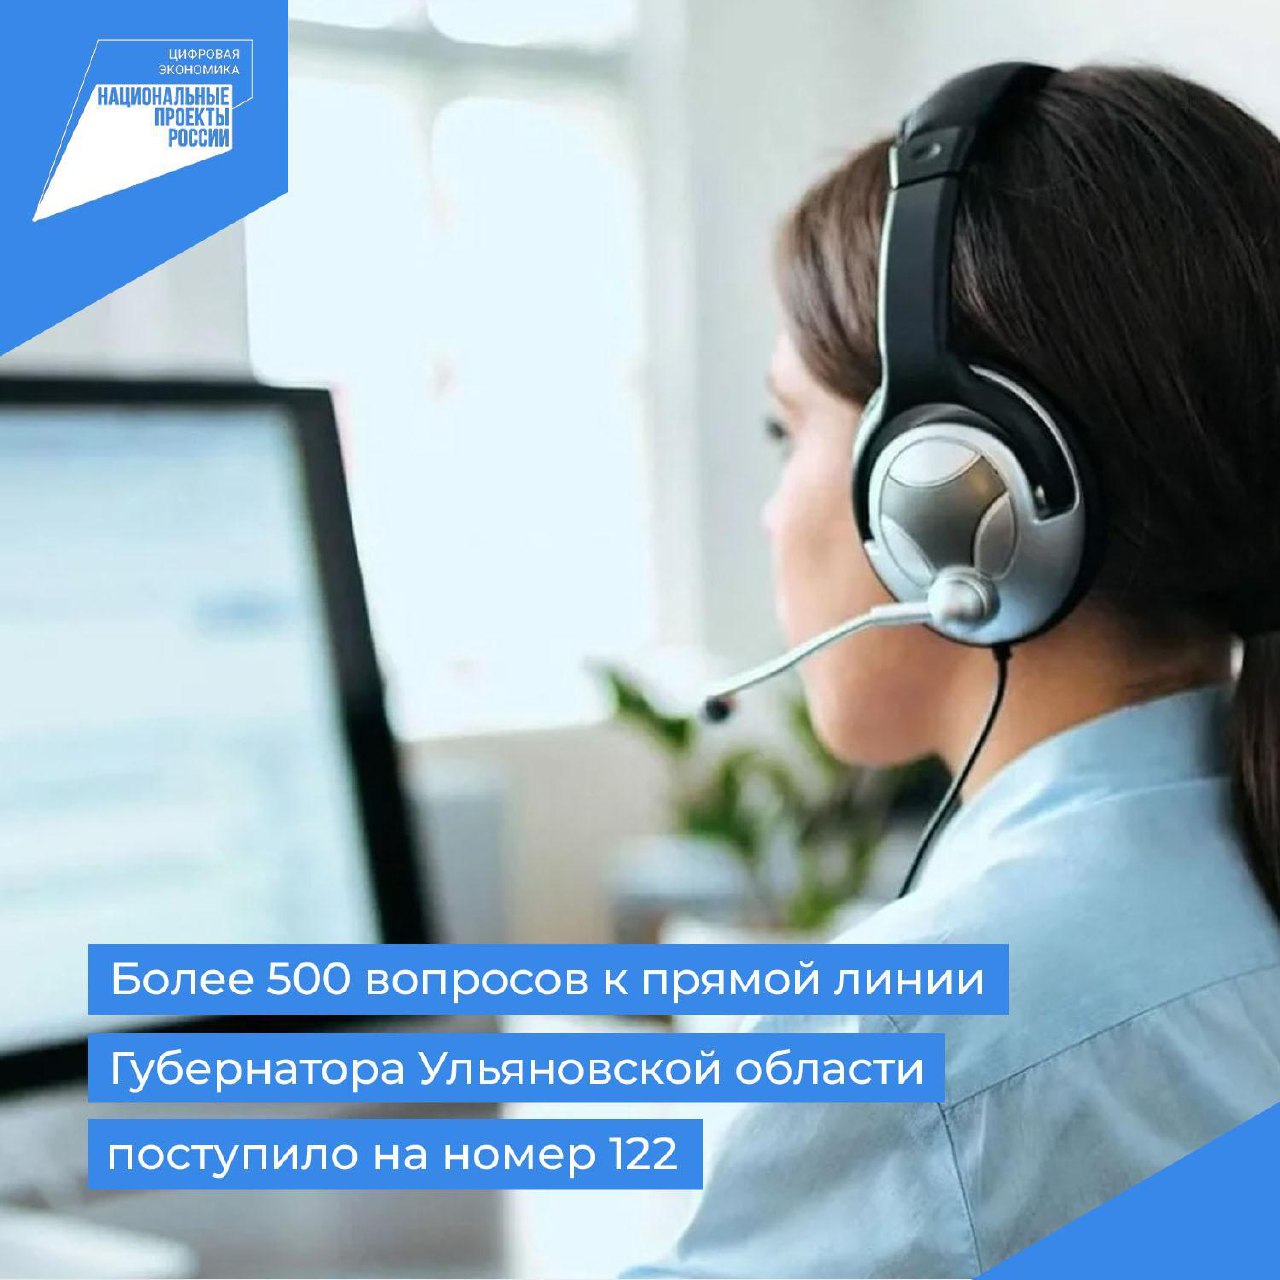 Более 500 вопросов к прямой линии Губернатора Ульяновской области поступило на номер 122.